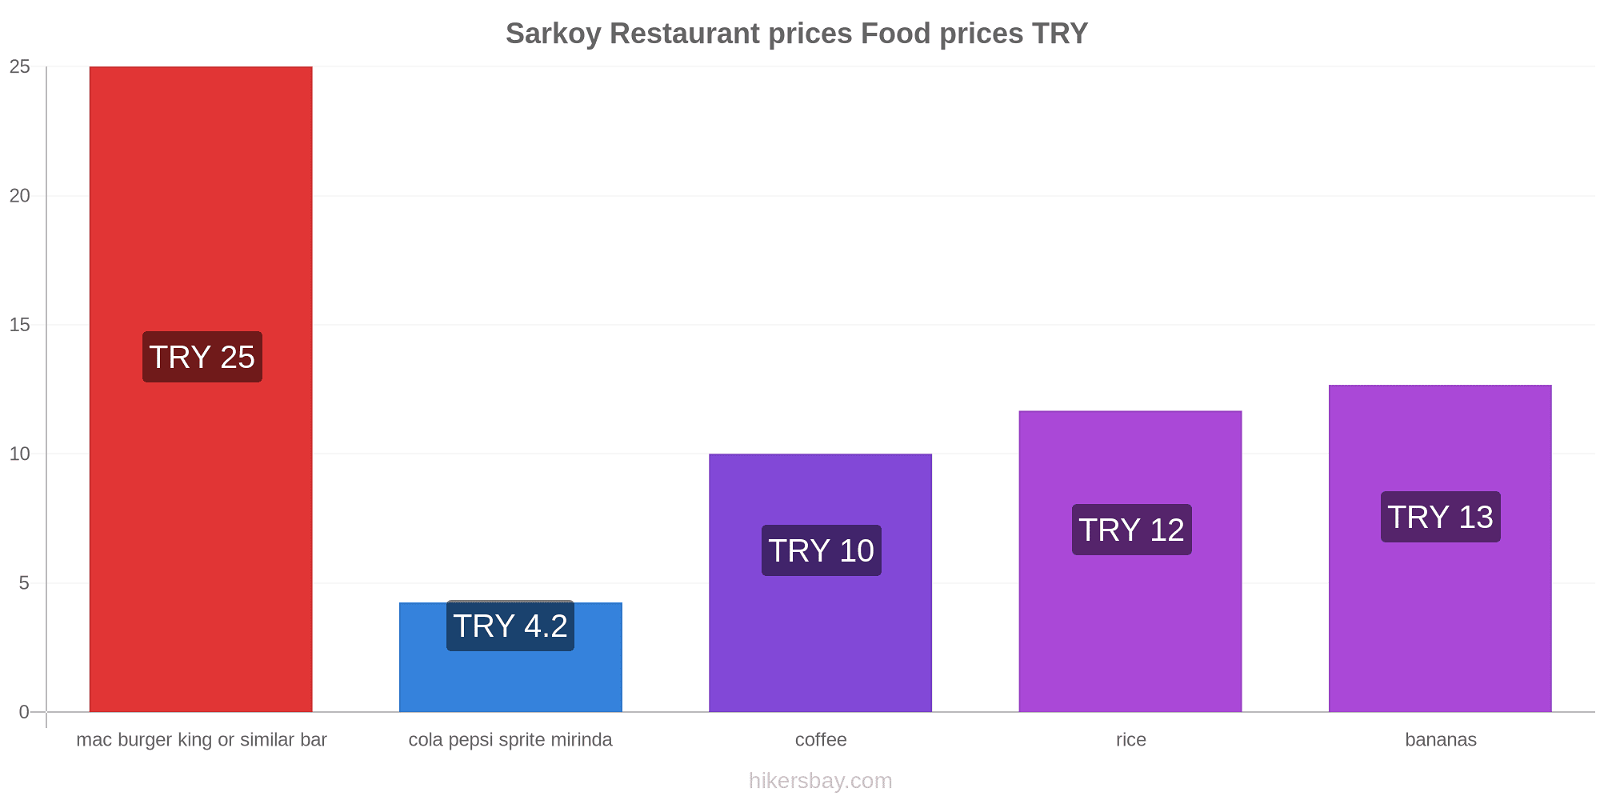 Sarkoy price changes hikersbay.com